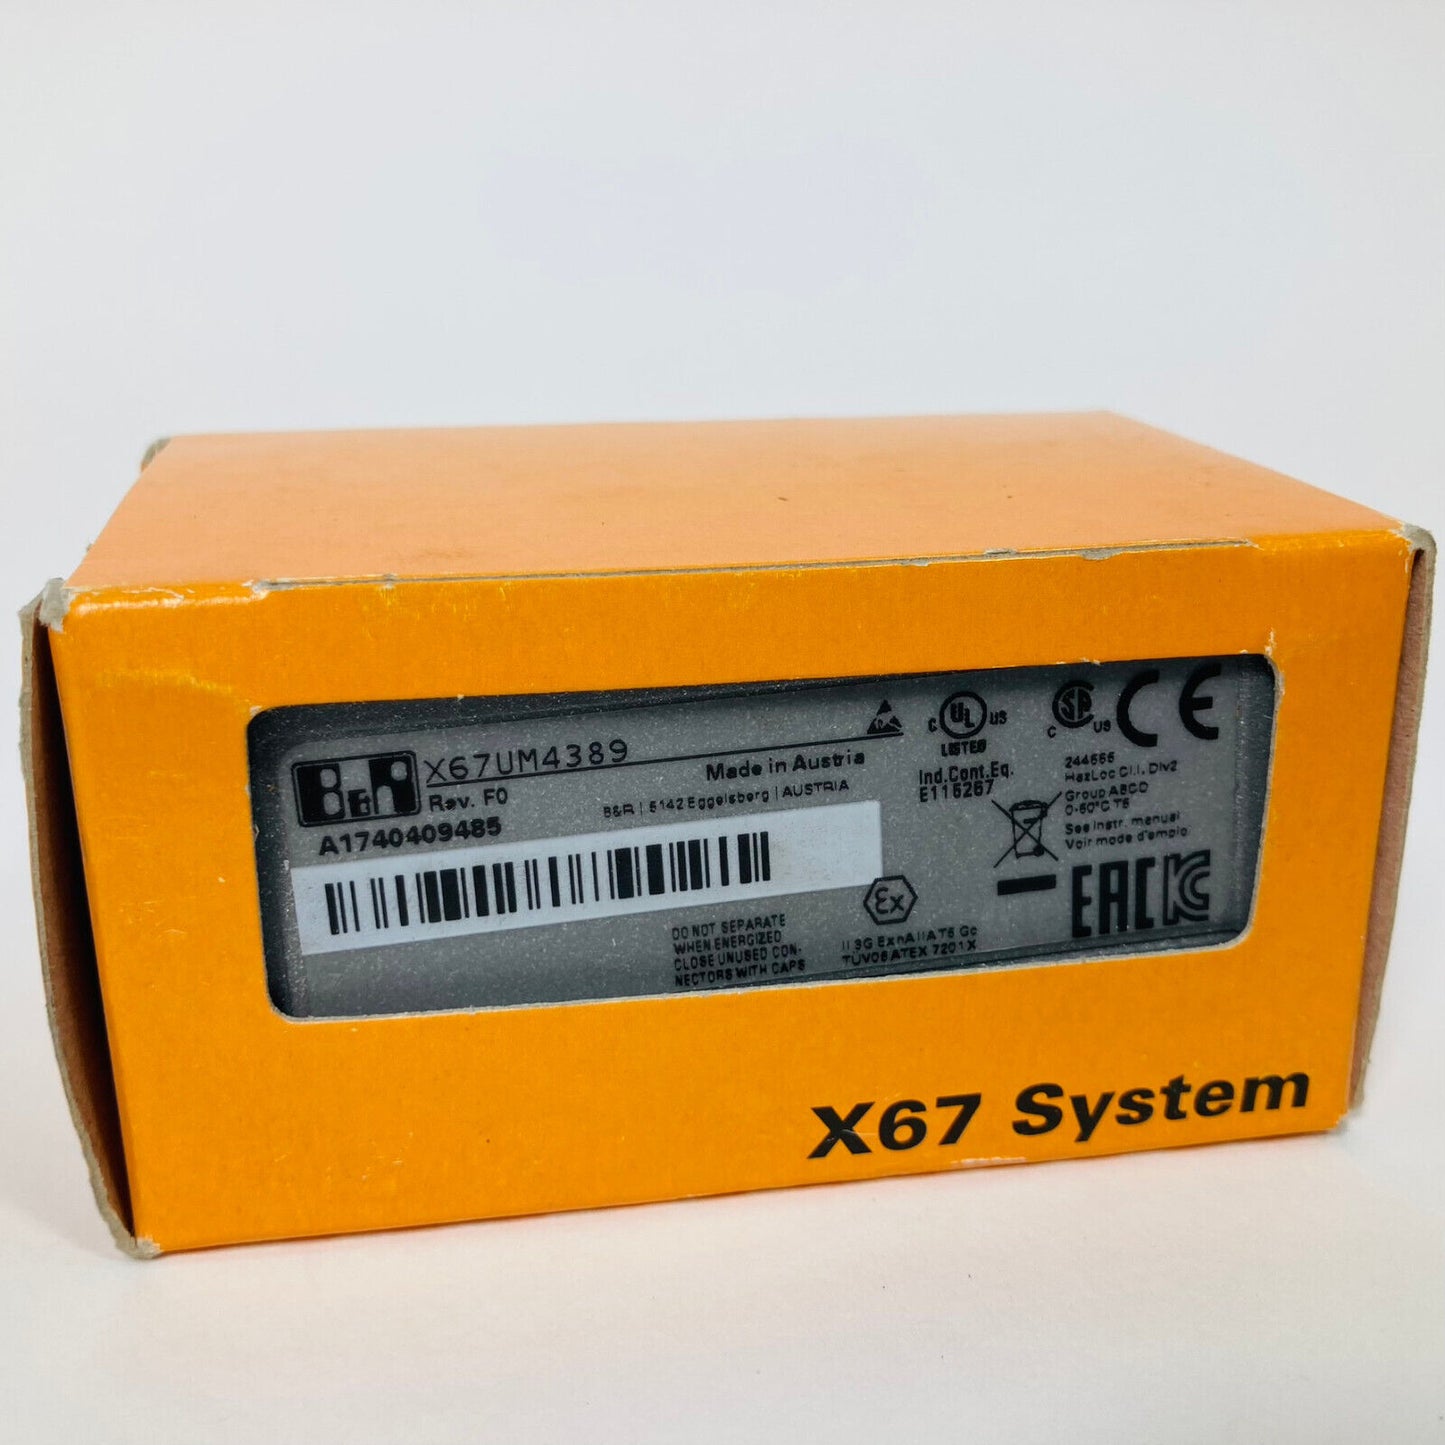 NEW B&R X67UM4389 Power Supply I/O X67 System Module